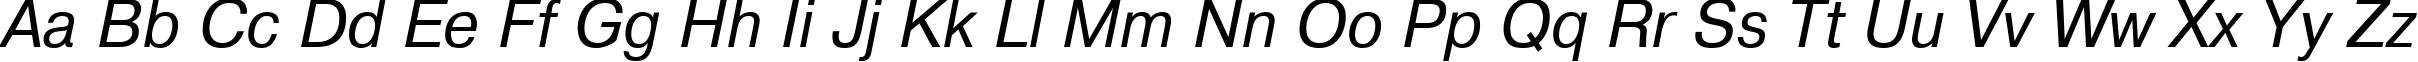 Пример написания английского алфавита шрифтом ArtsansC Italic